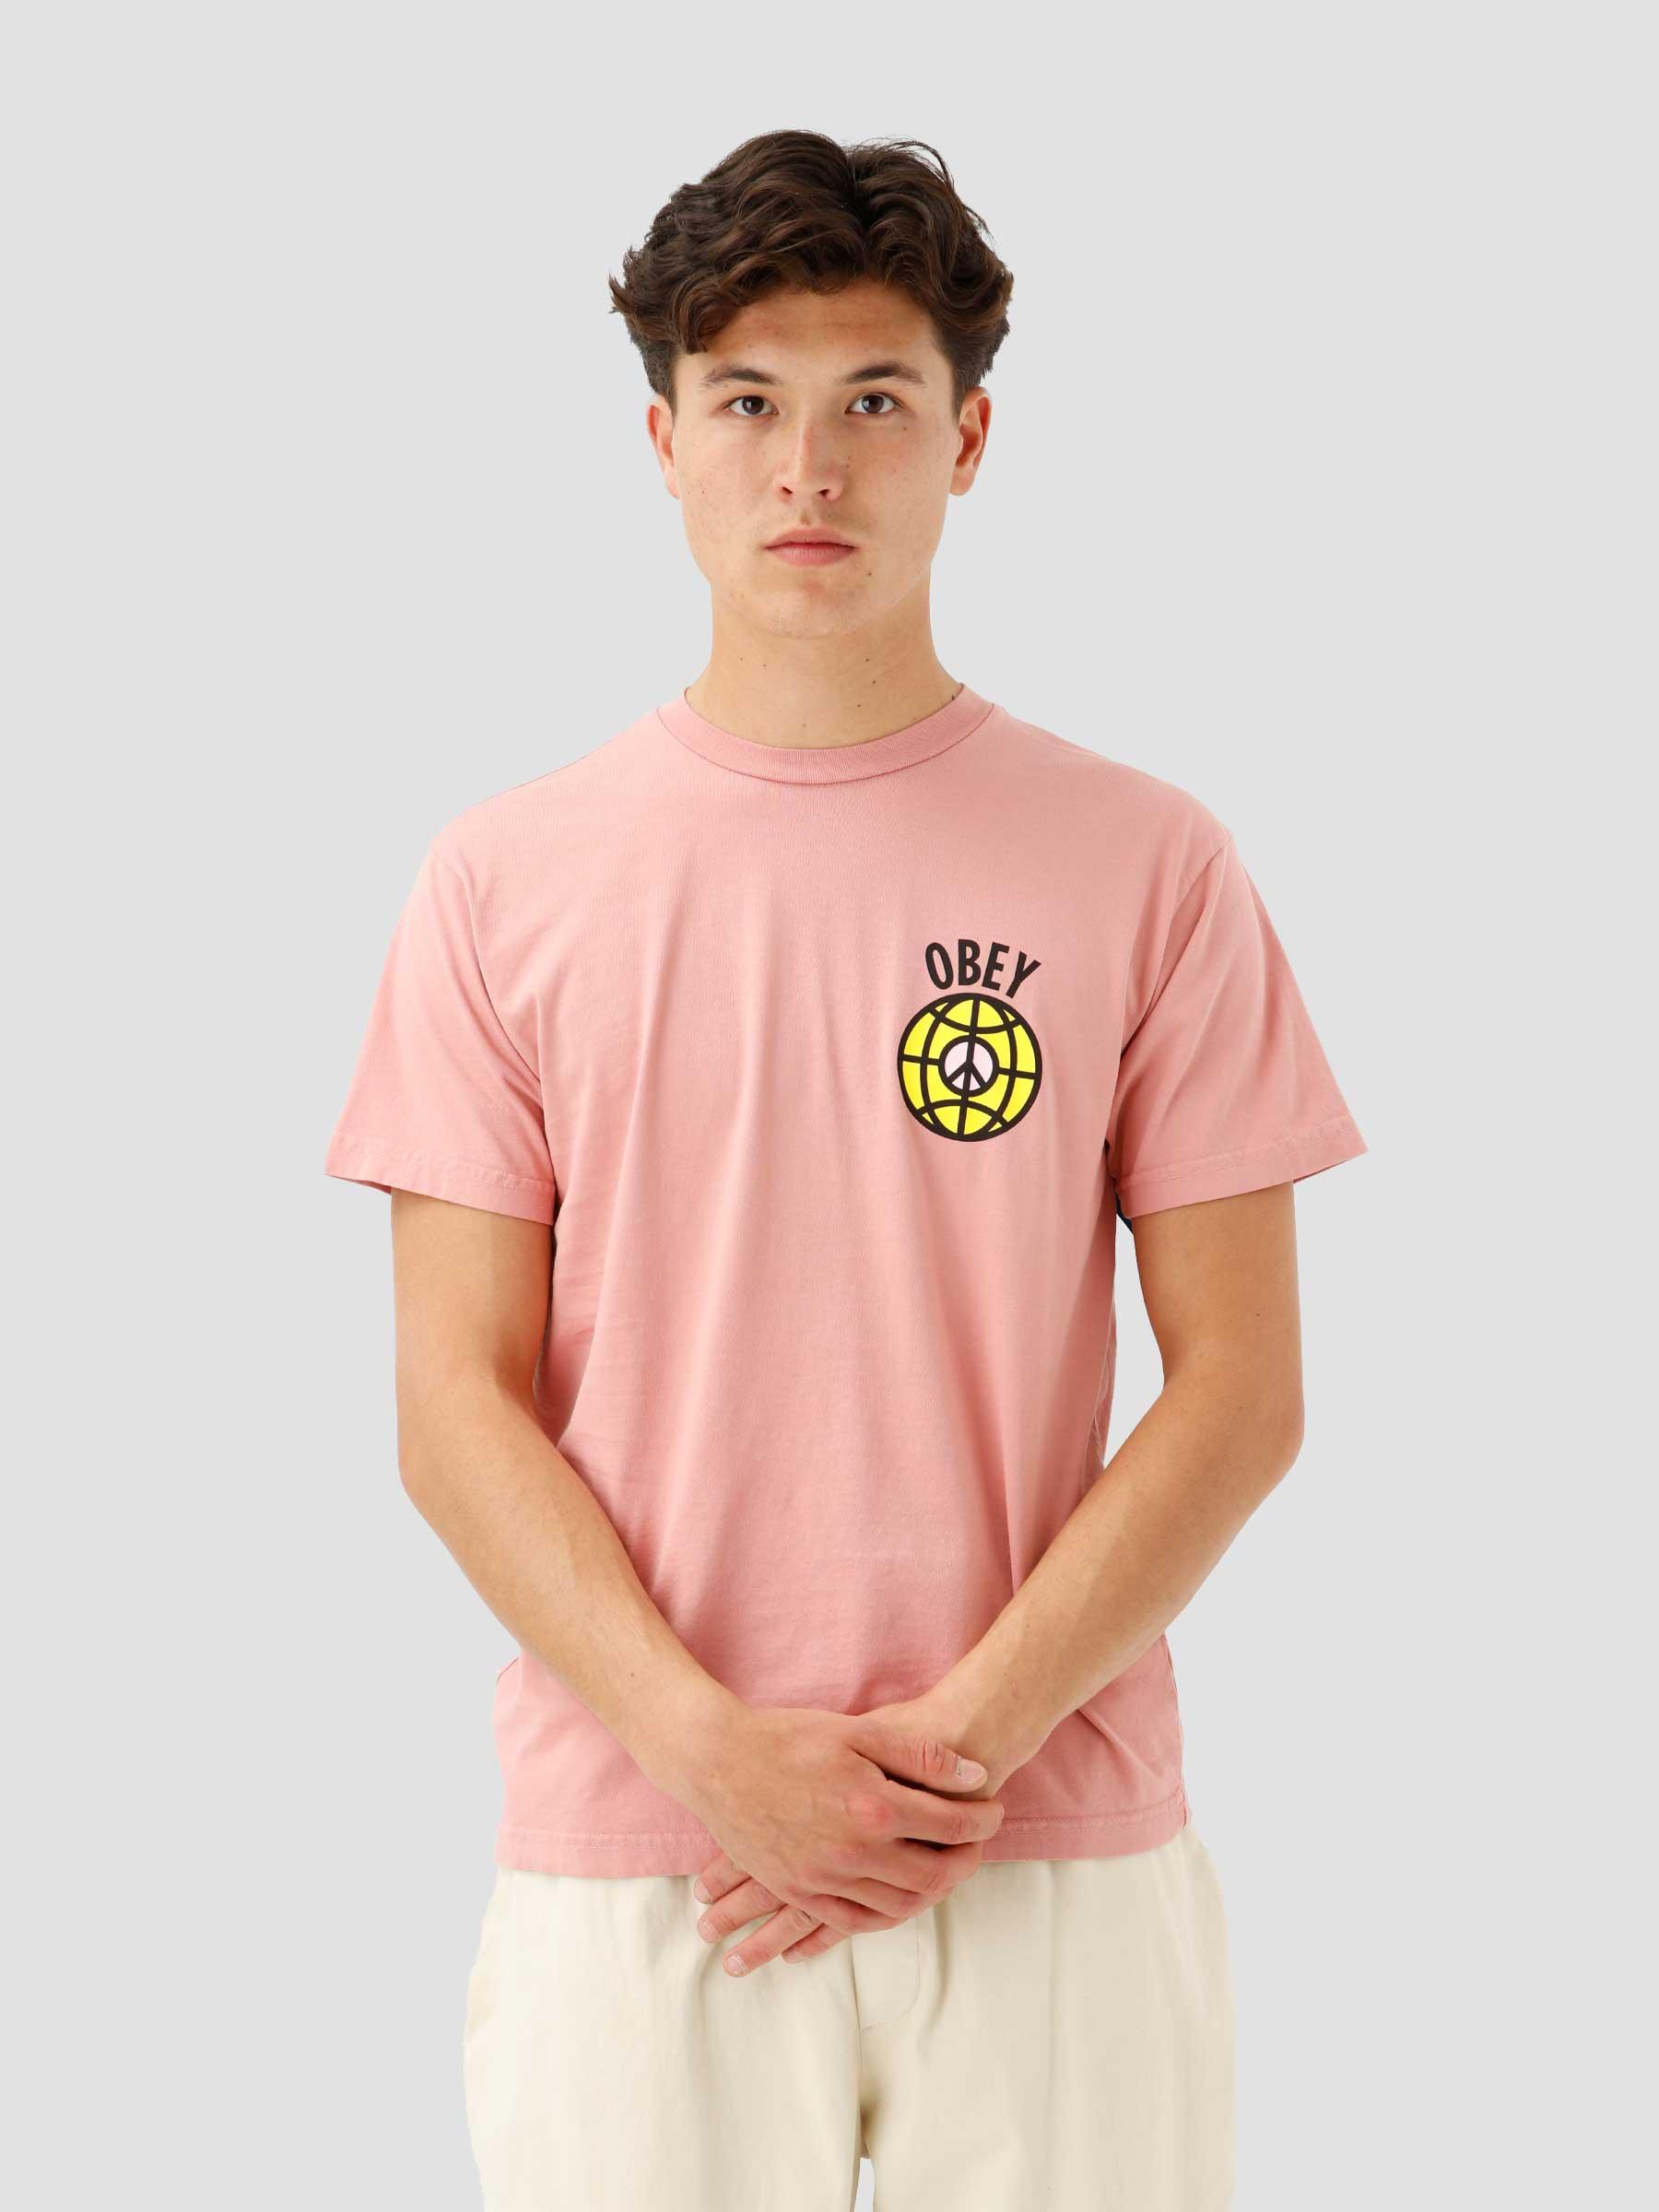 Empower All Women T-shirt Pink Amethyst 163003091